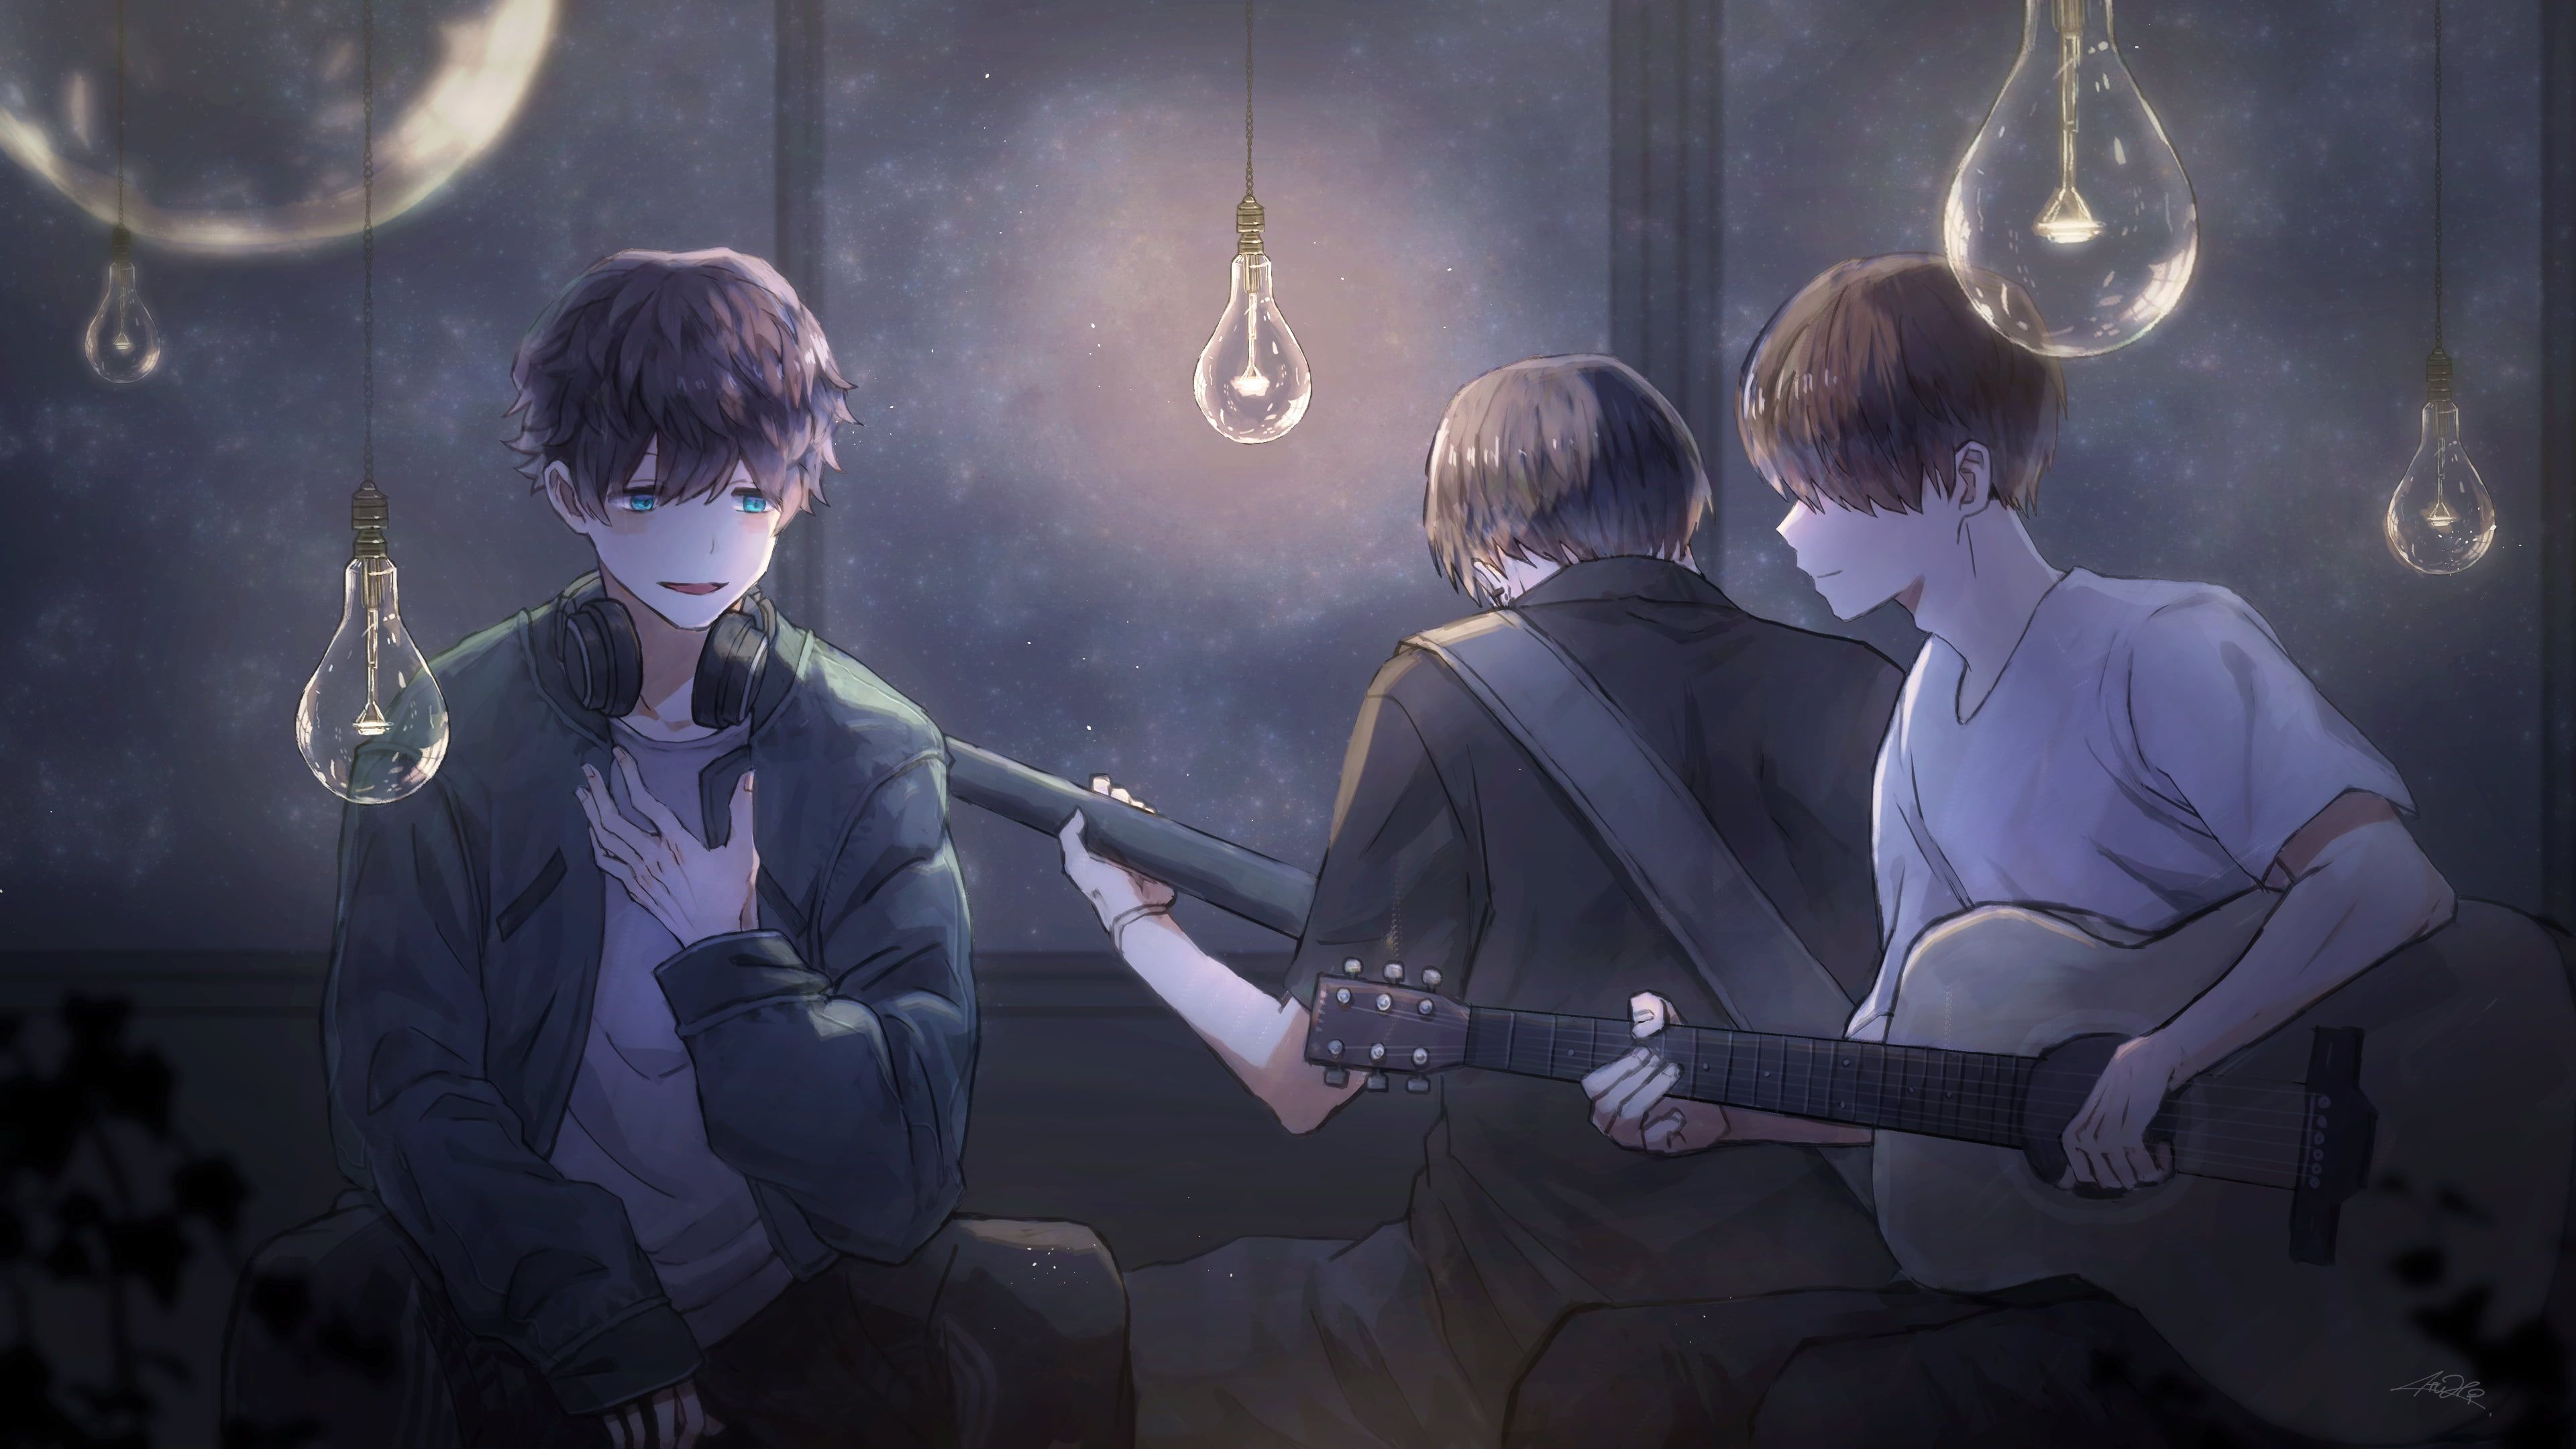 anime anime boys #headphones #guitar K #wallpaper #hdwallpaper #desktop. Anime, Anime boy, HD wallpaper